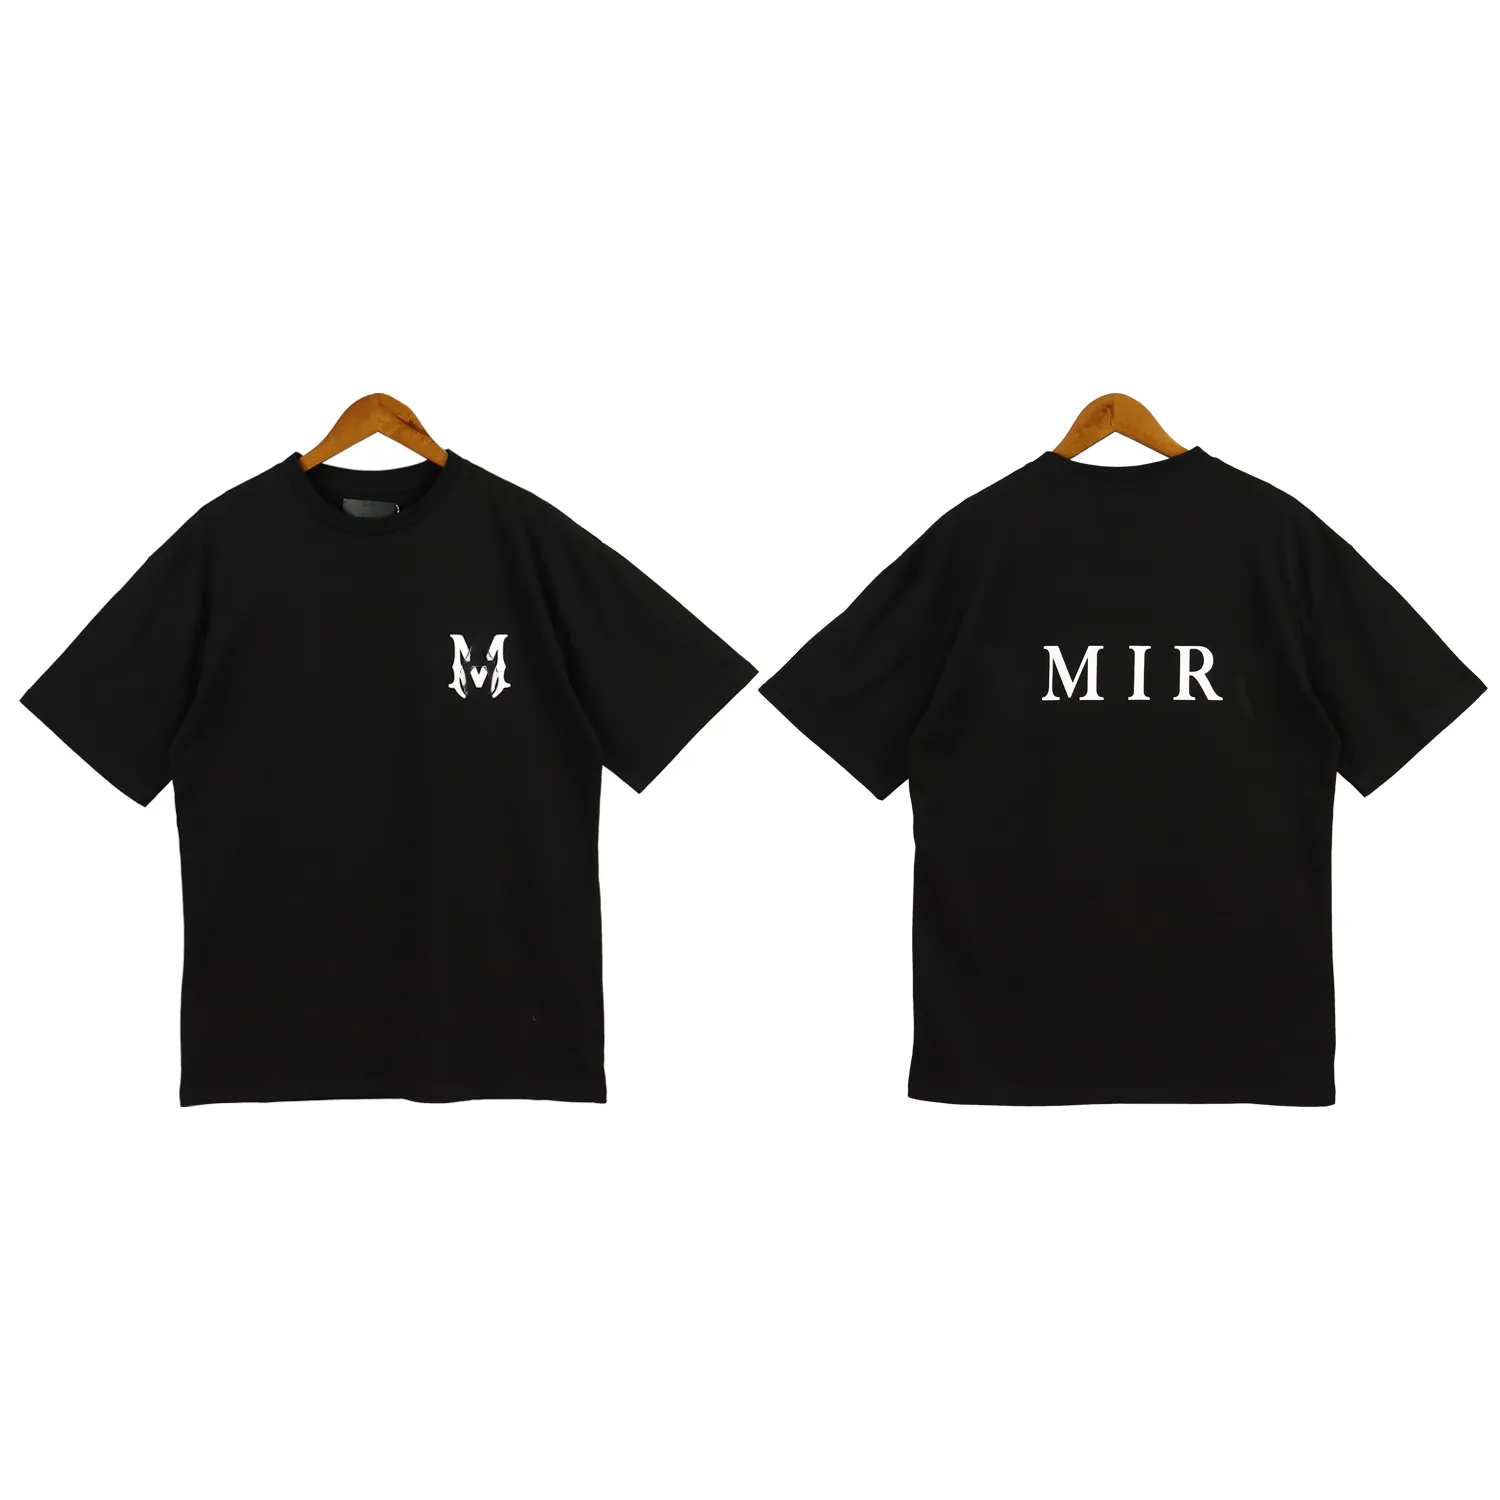 225 Miri Mens Tshirt 여자 티셔츠 셔츠 커플 스트리트 패션 브랜드 셔츠 인쇄 아미르 짧은 슬리브 캐주얼 느슨한 남자 티셔츠 라운드 목 크기 s